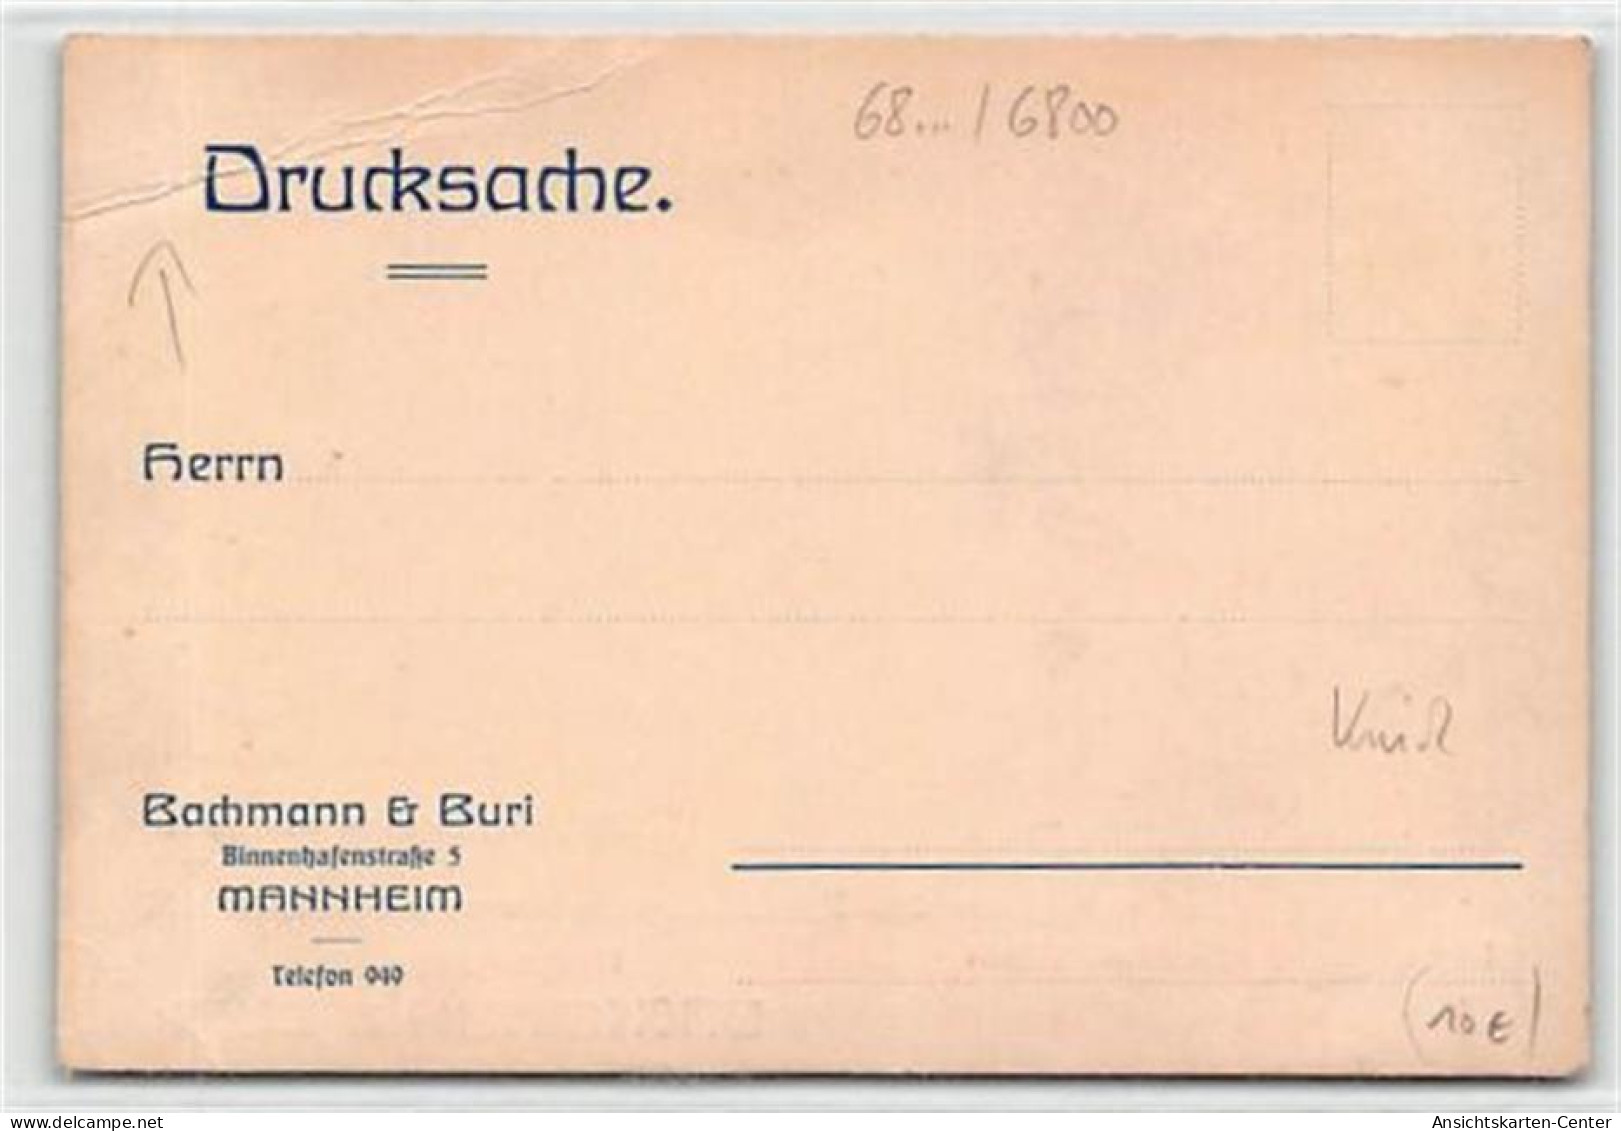 39100405 - Werbekarte Mannheim Von Bachmann & Buri.  Ein Schiff Vor Dem Bachmann  & Buri Gebaeude Ungelaufen  Knick Unt - Mannheim